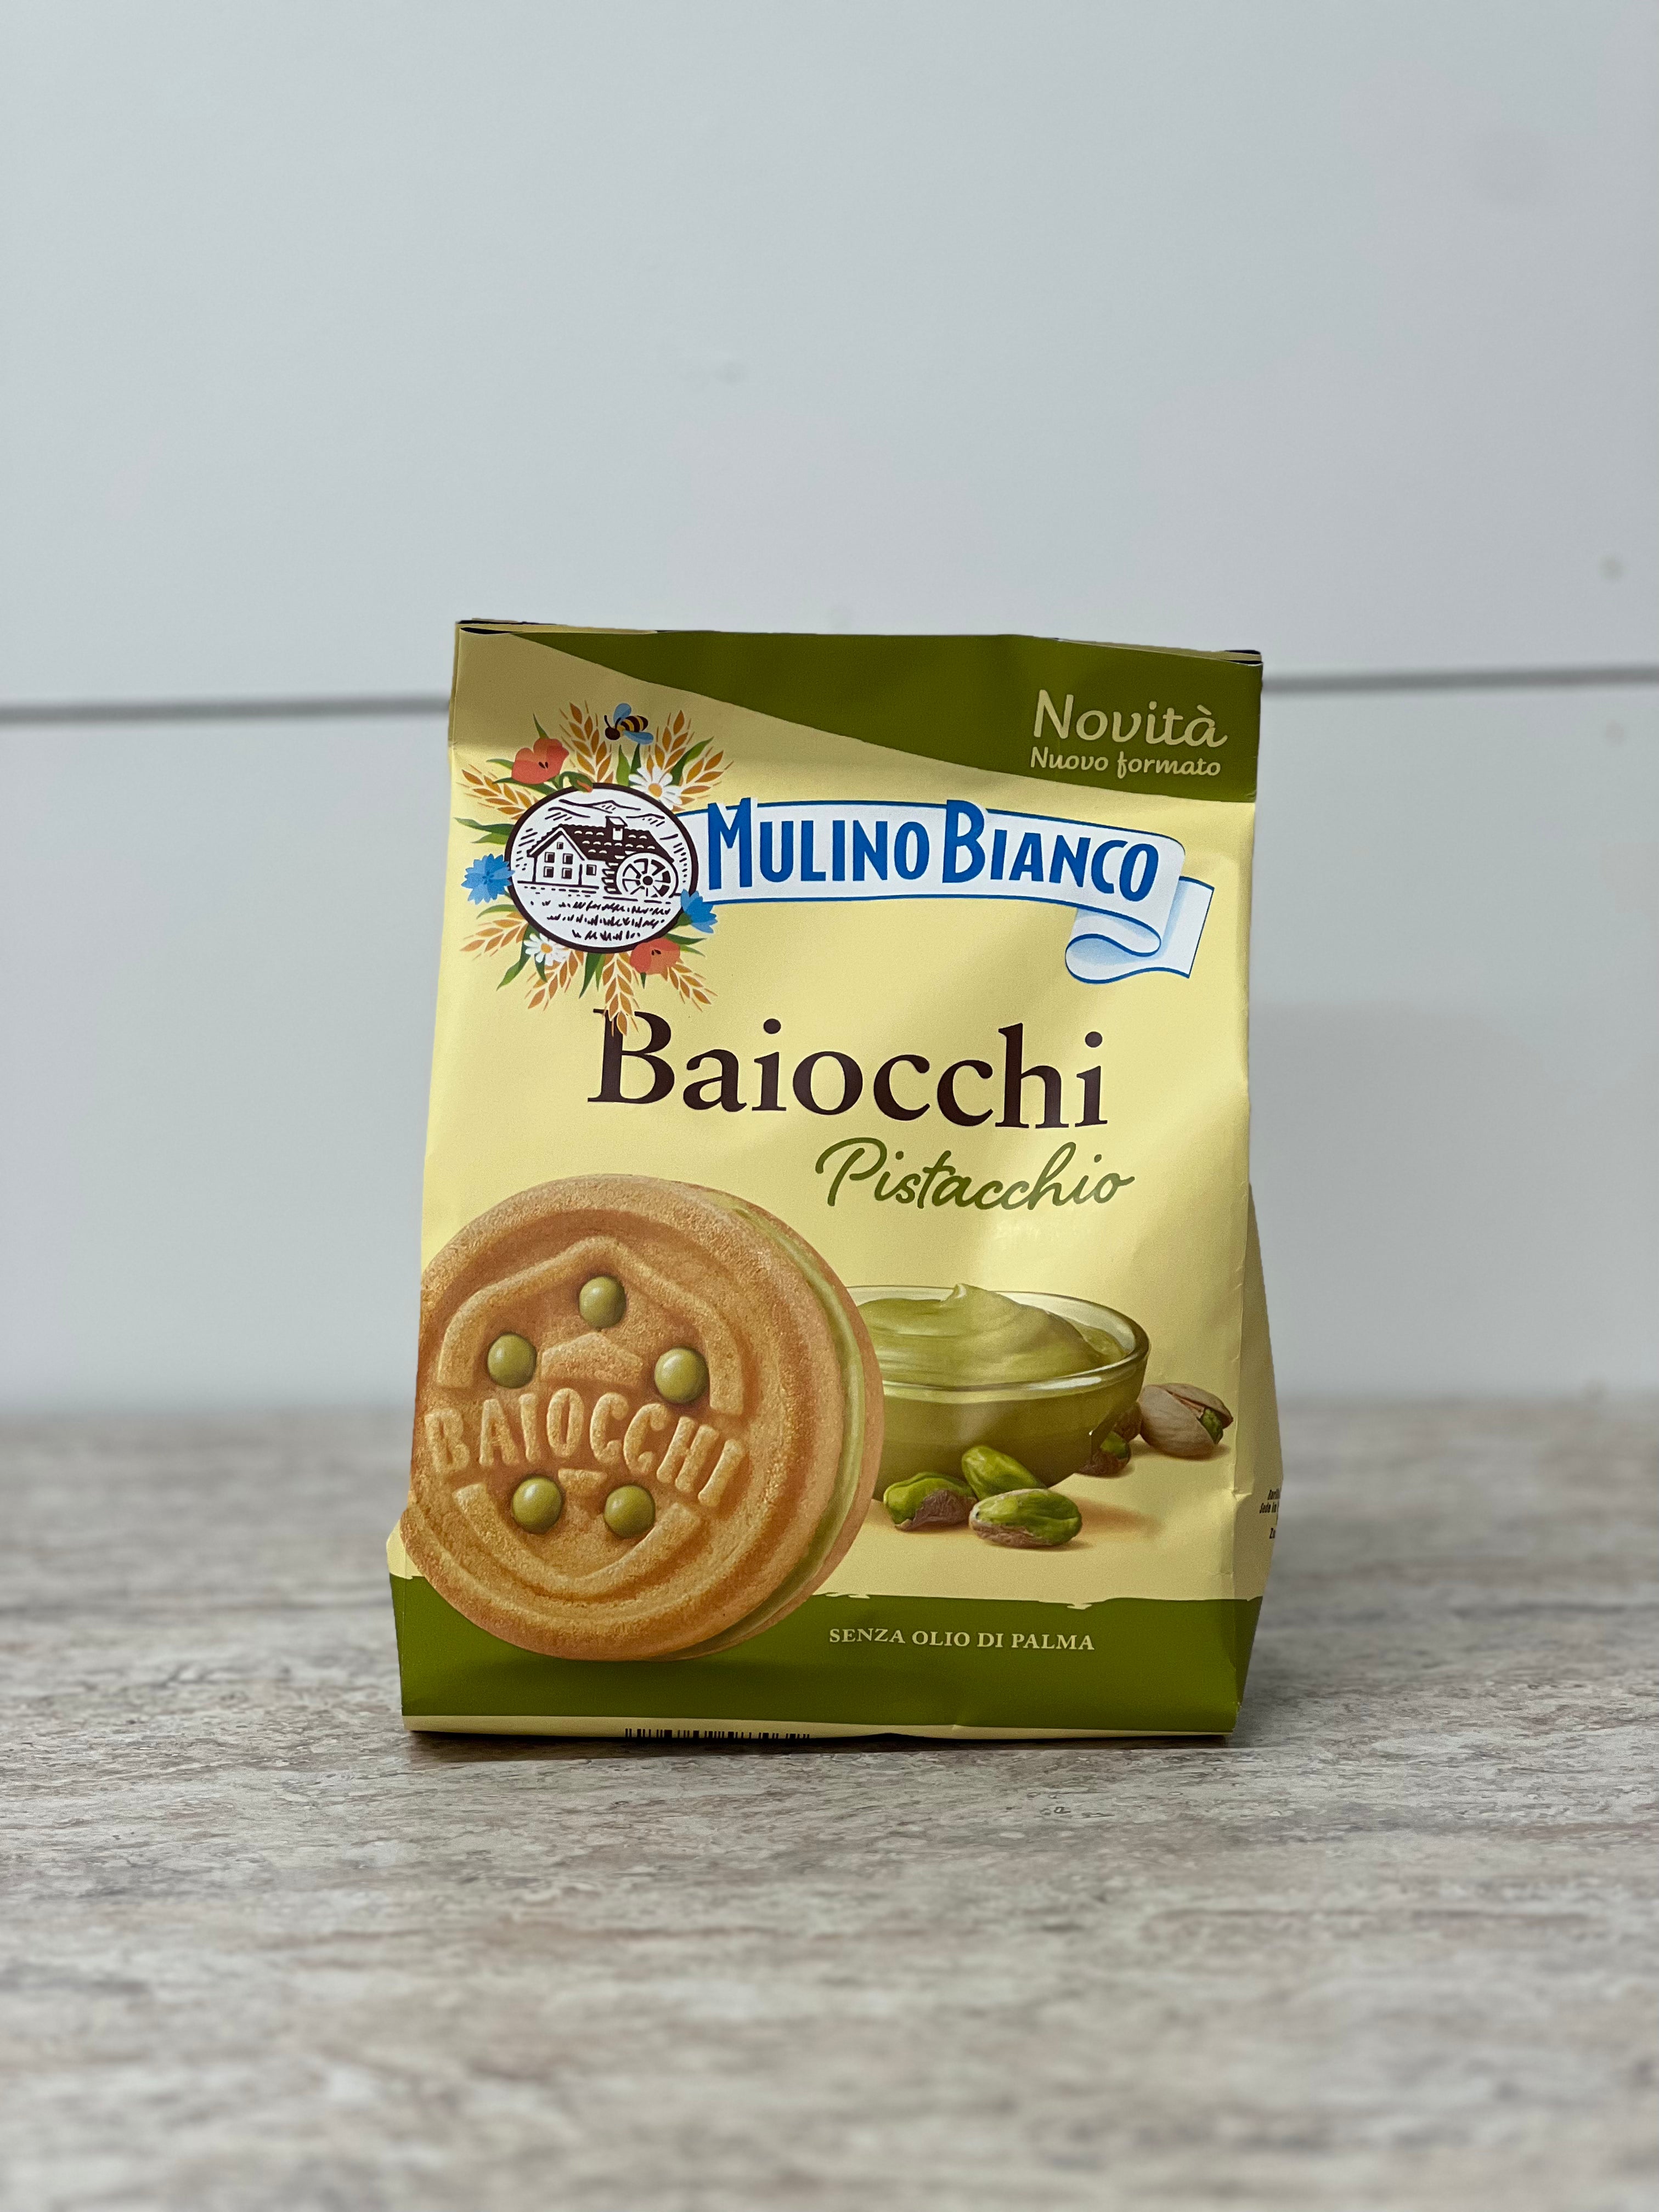 Mulino Bianco Baiocchi Biscuits With Pistachio, 240g – Nino's Italian Deli